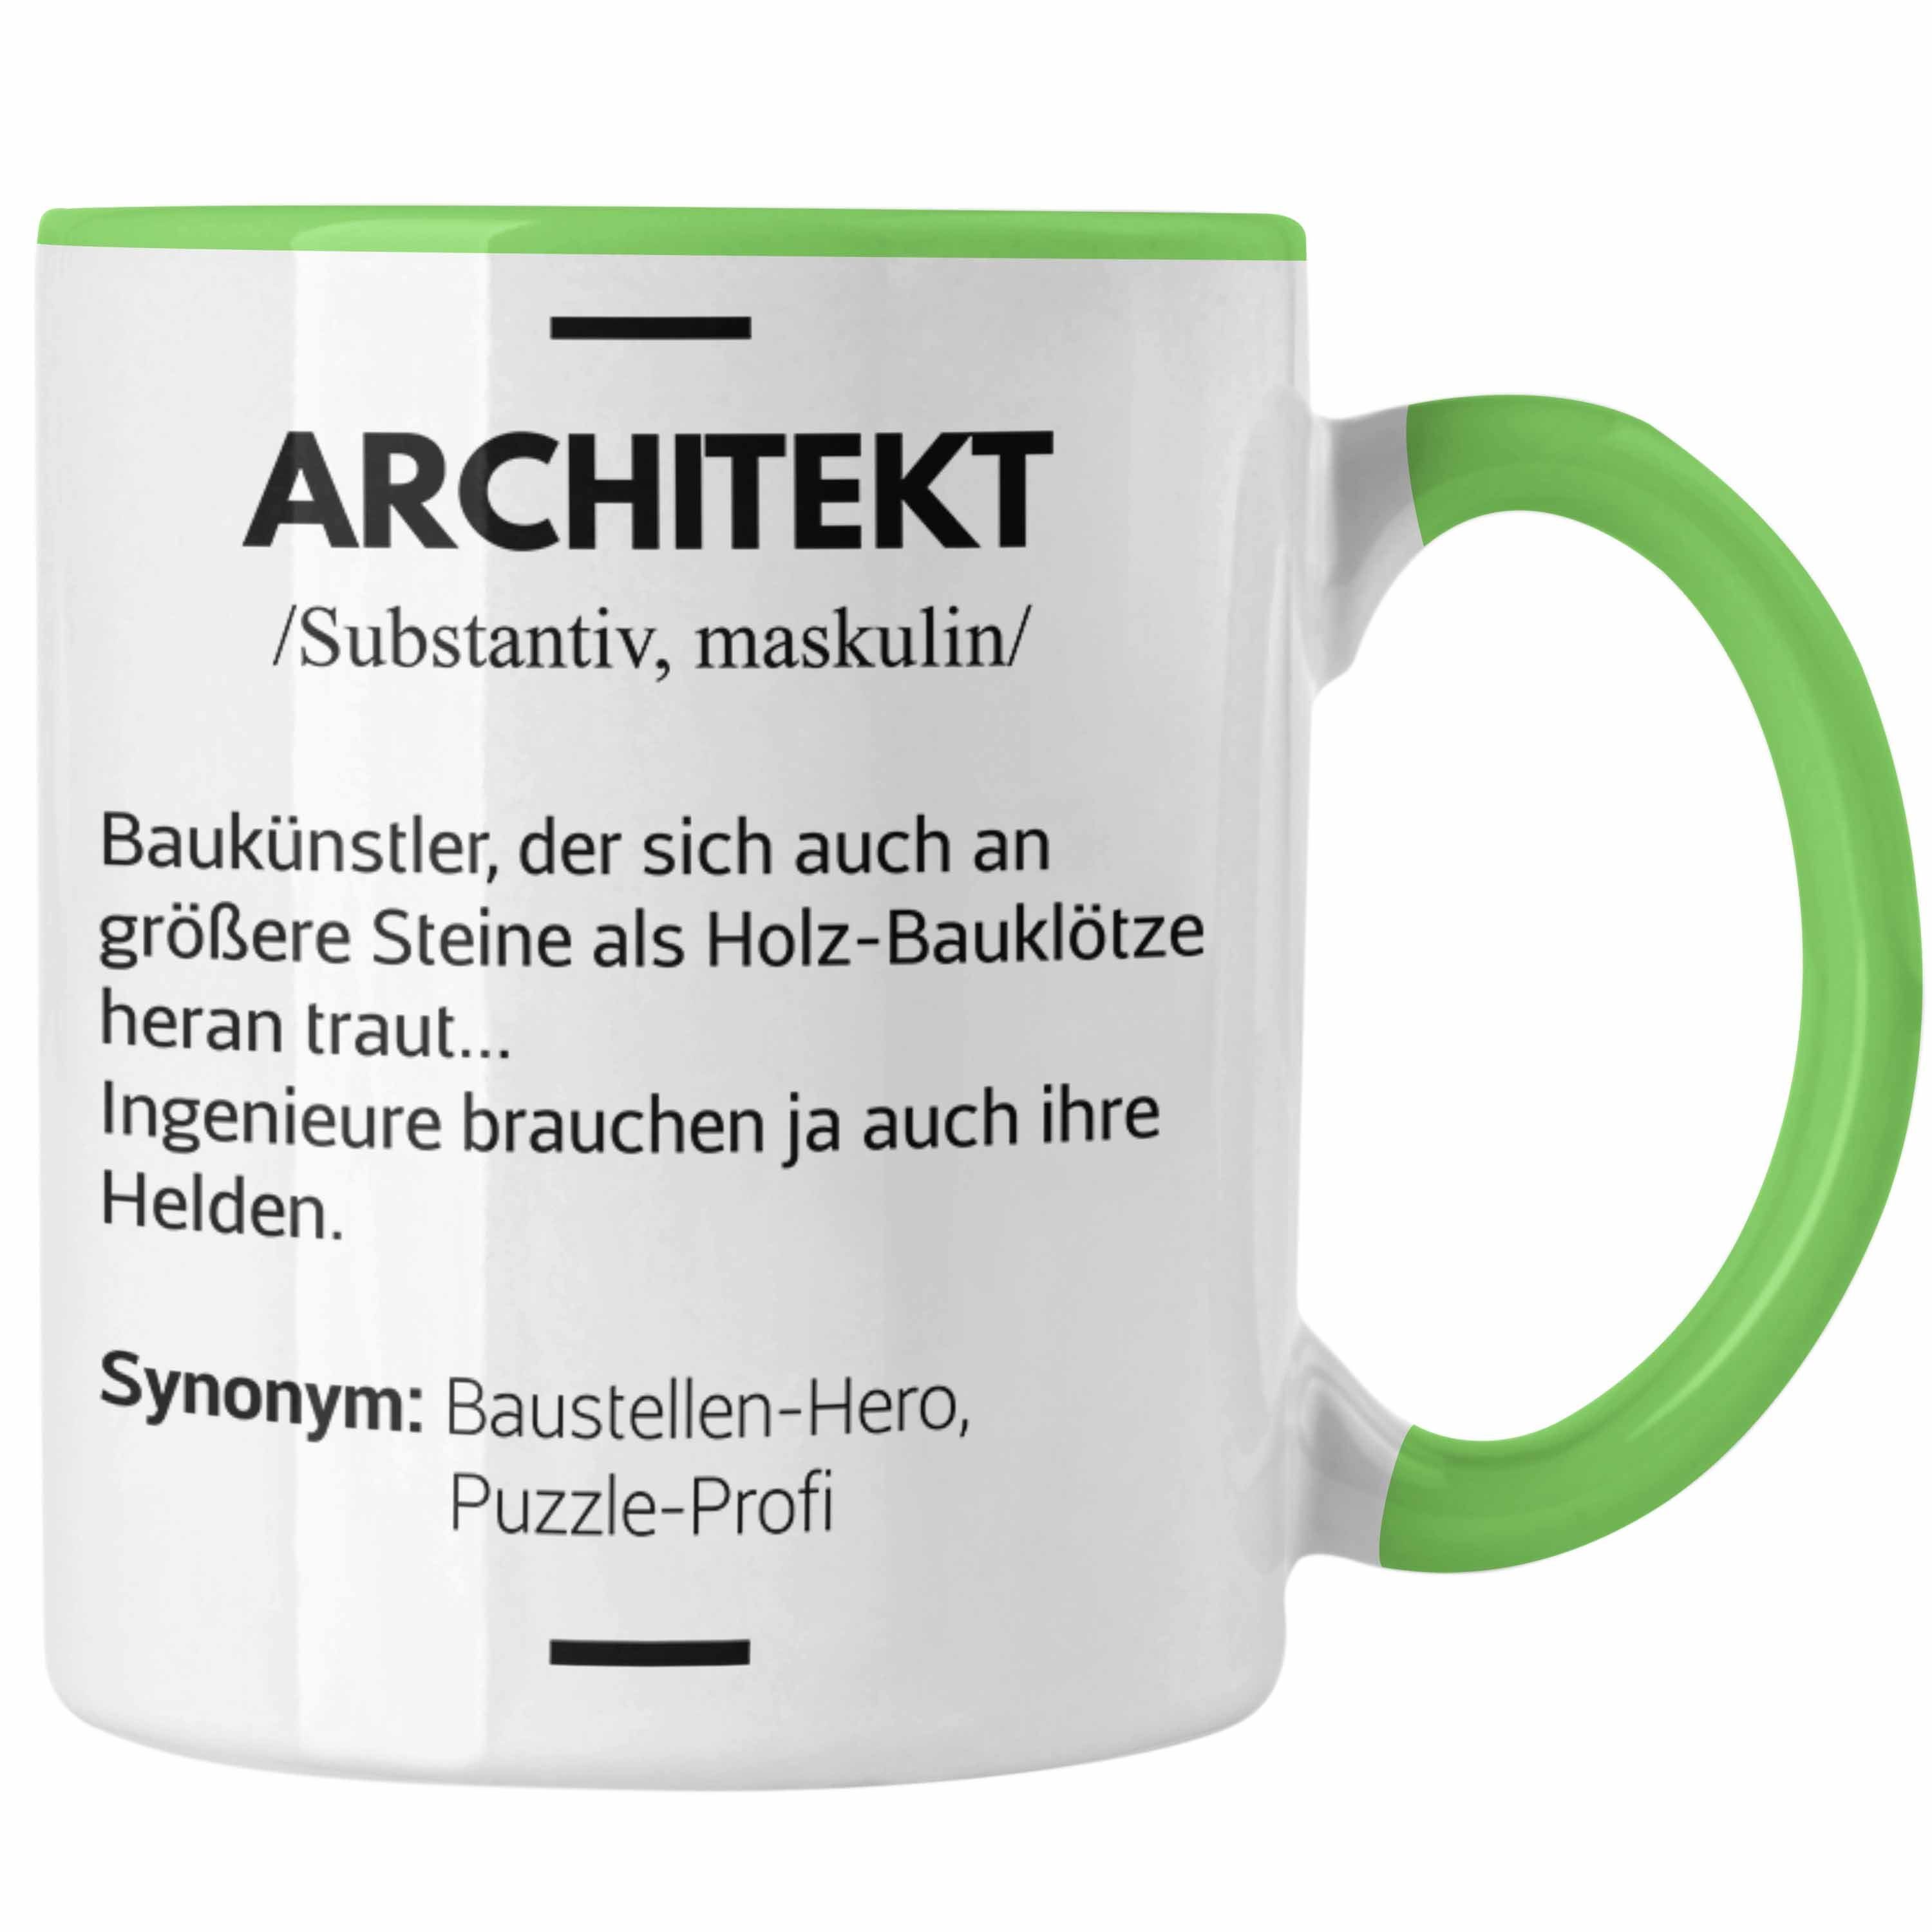 Trendation Tasse Trendation - Architekt Geschenke Tasse Lustig Kaffeetasse mit Spruch Architektur Architekten Geschenkidee Spruch Grün